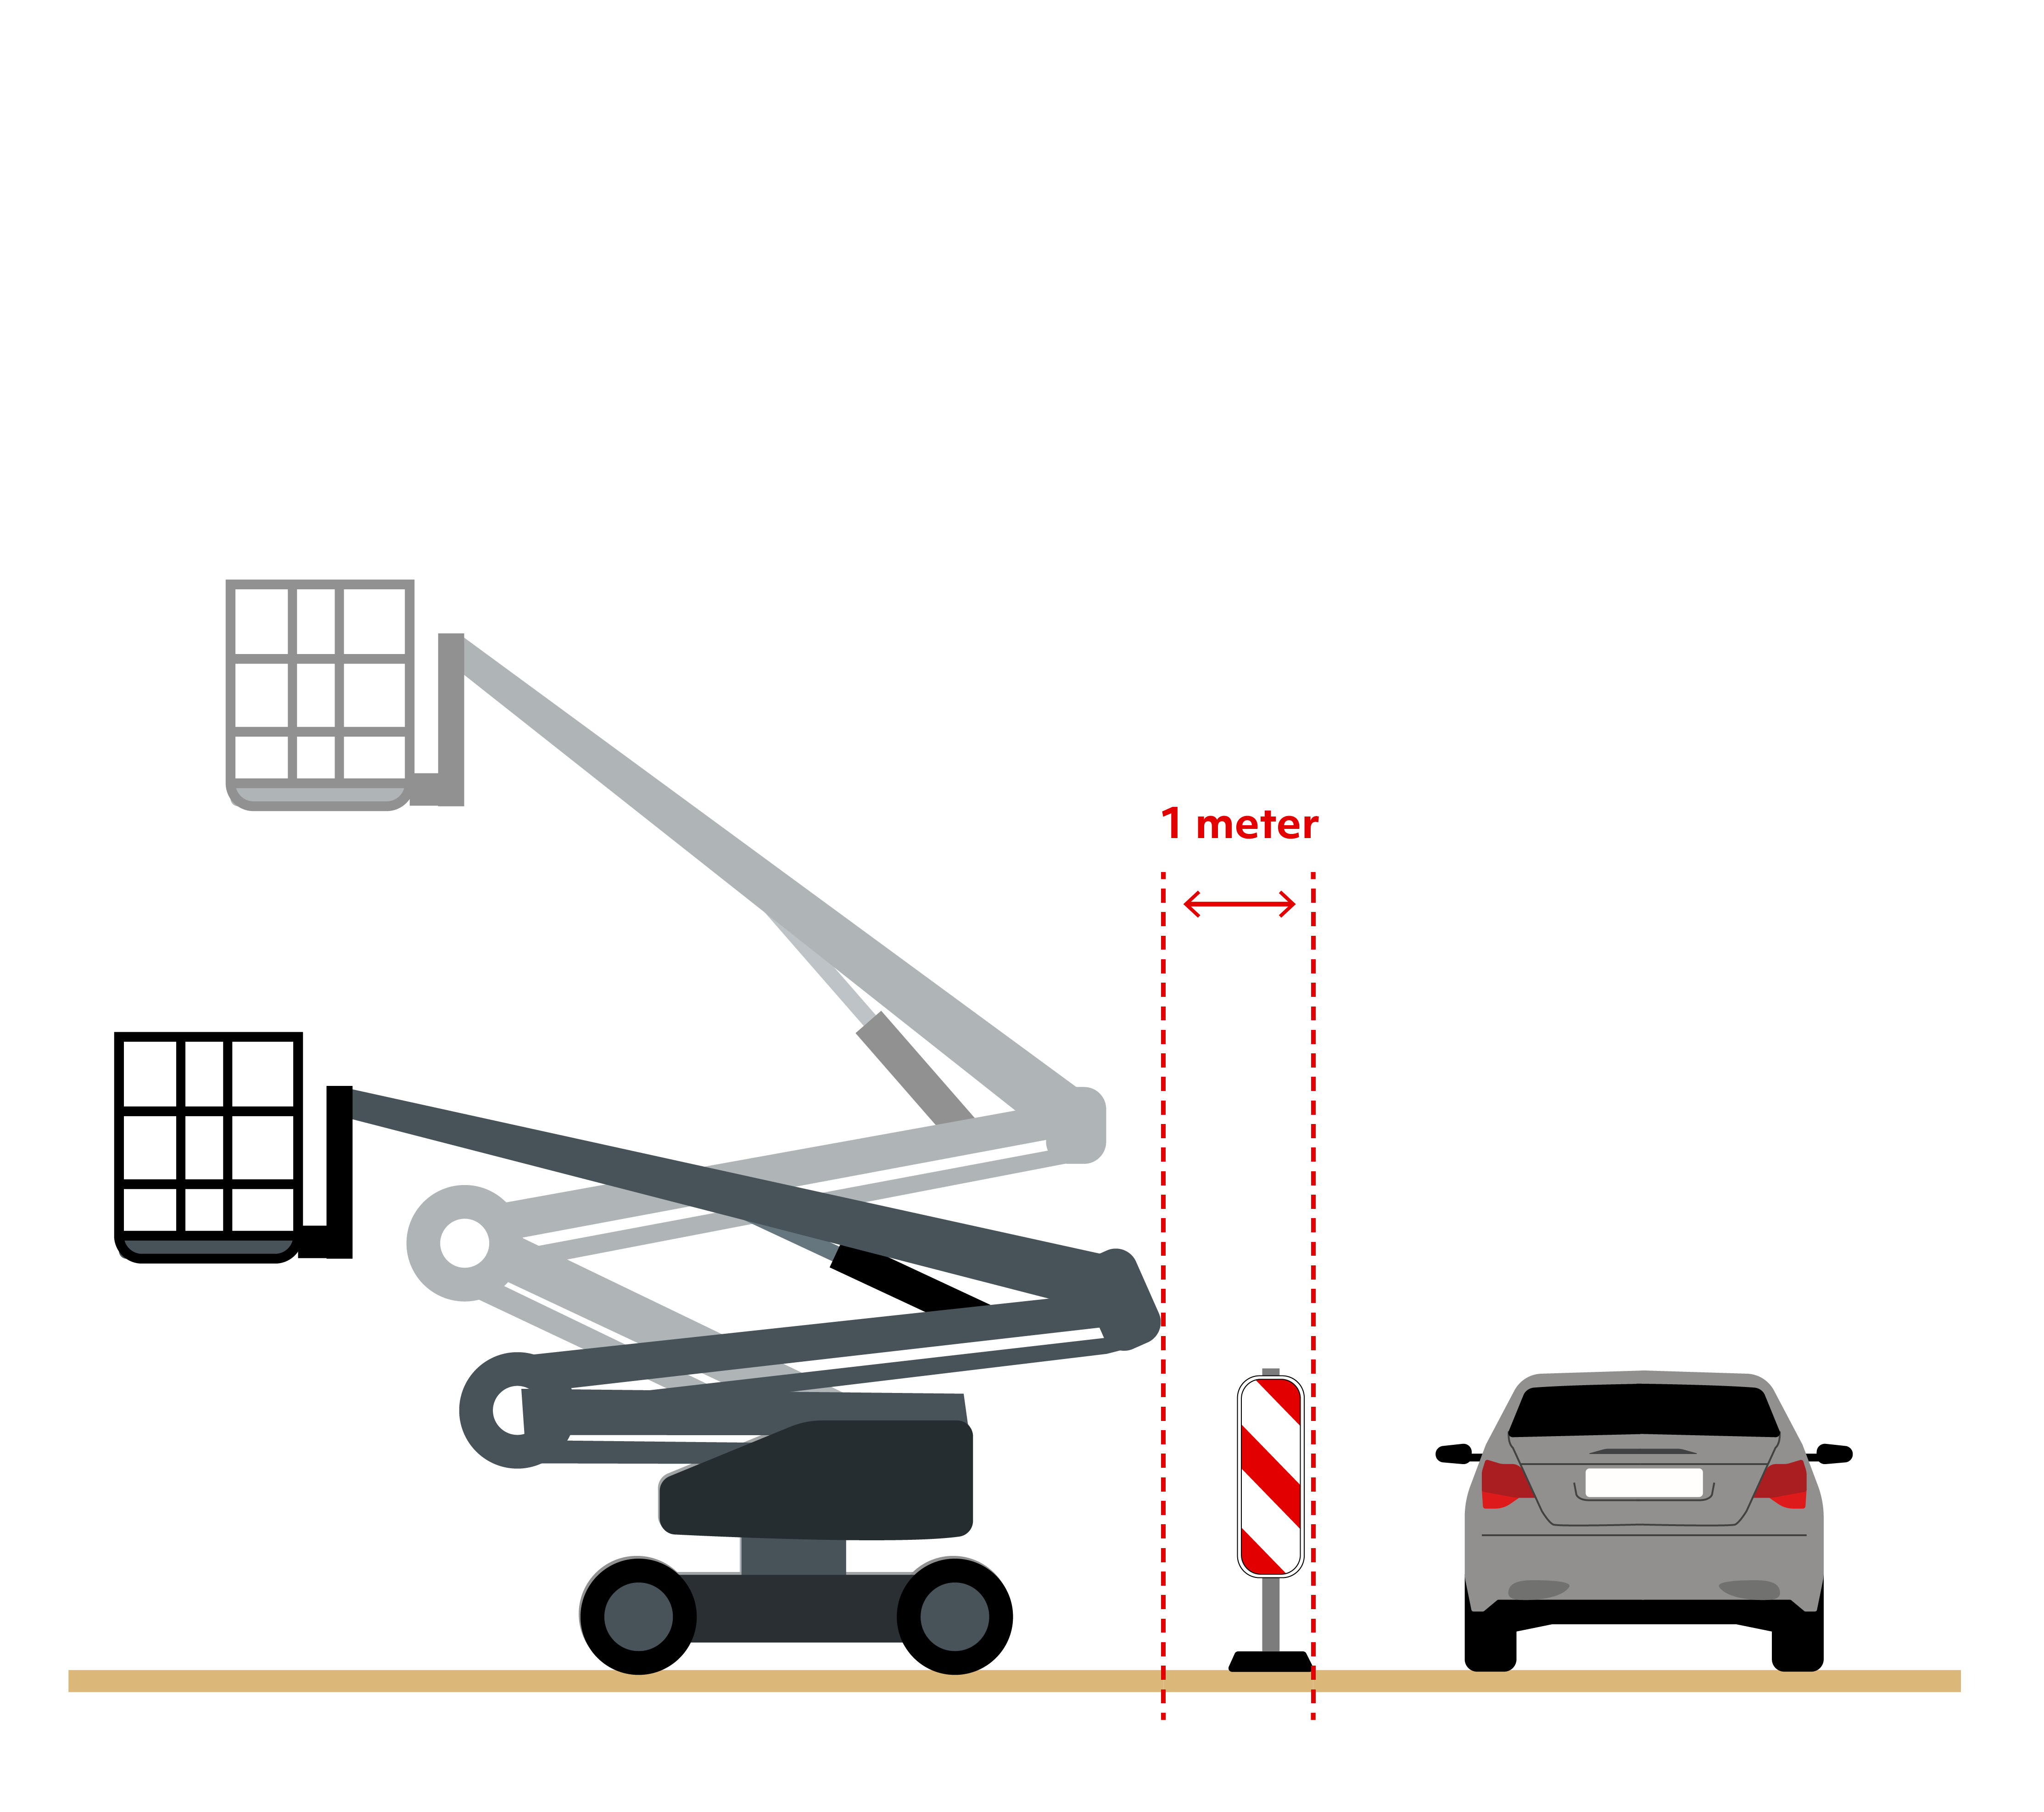 Illustrationn af sikkerhedsafstanden for lift. Uanset hvilken position liften er i, skal der være en sikkerhedsafstand på mindst en meter ud til kørebanen